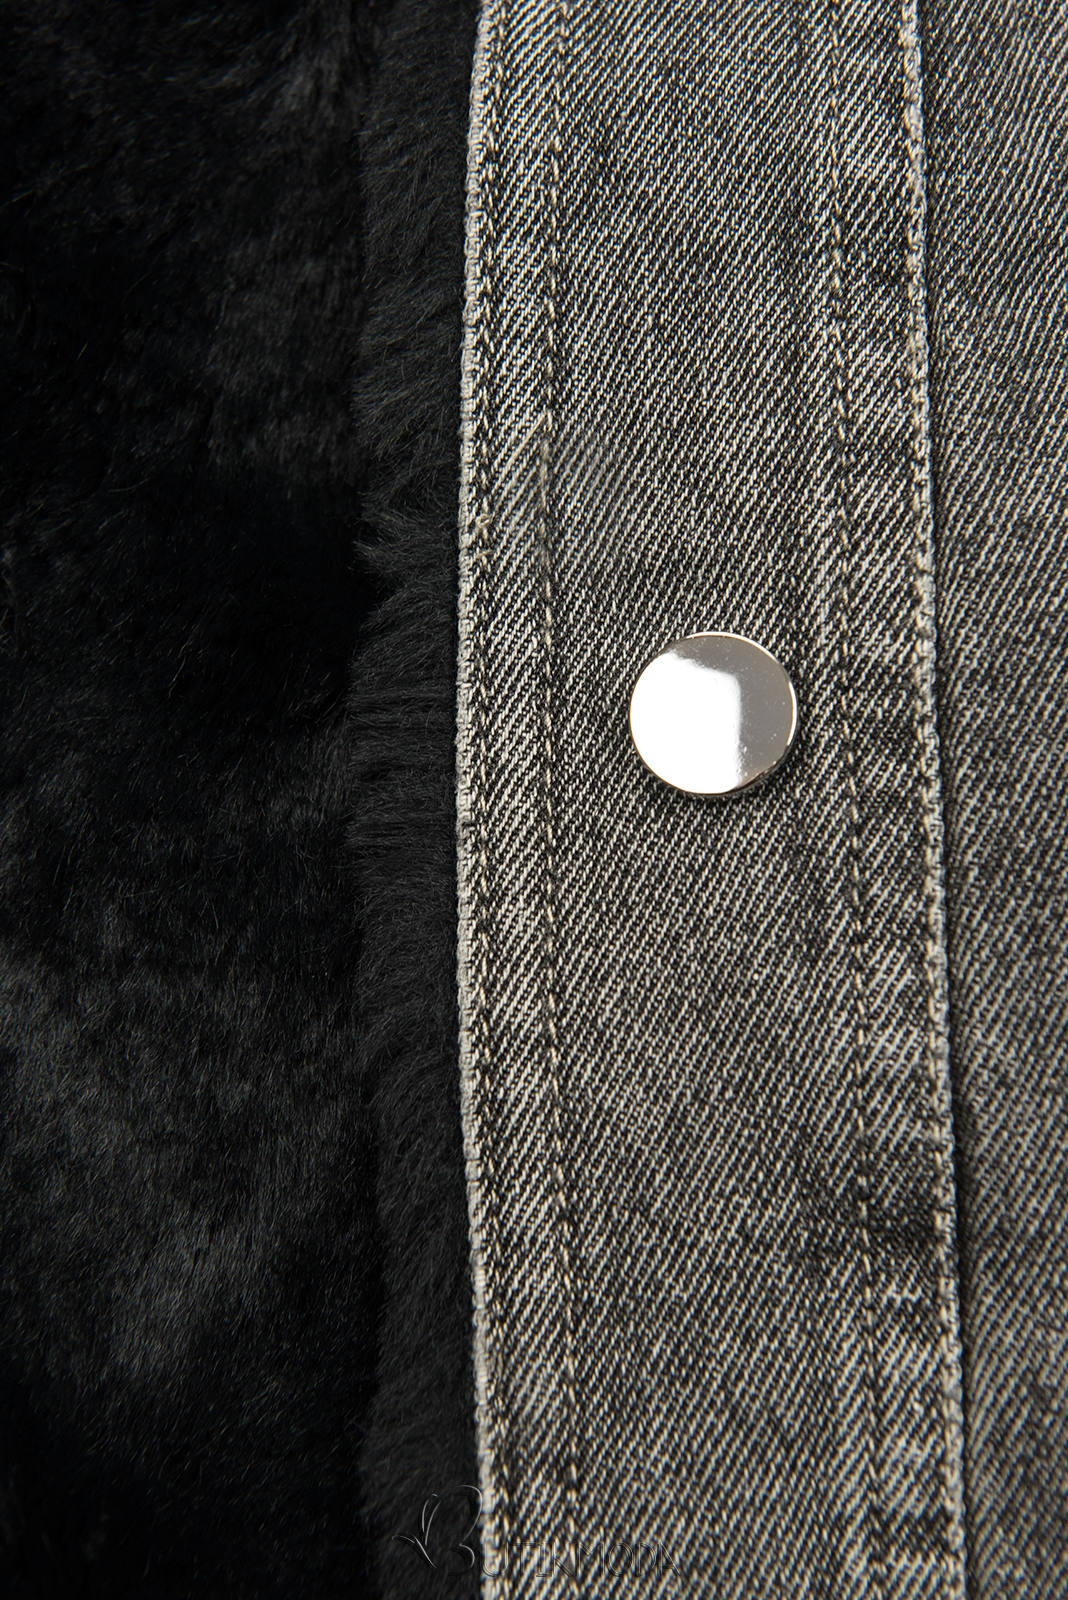 Jeansjacke mit kuscheligem Fellimitat grau/schwarz